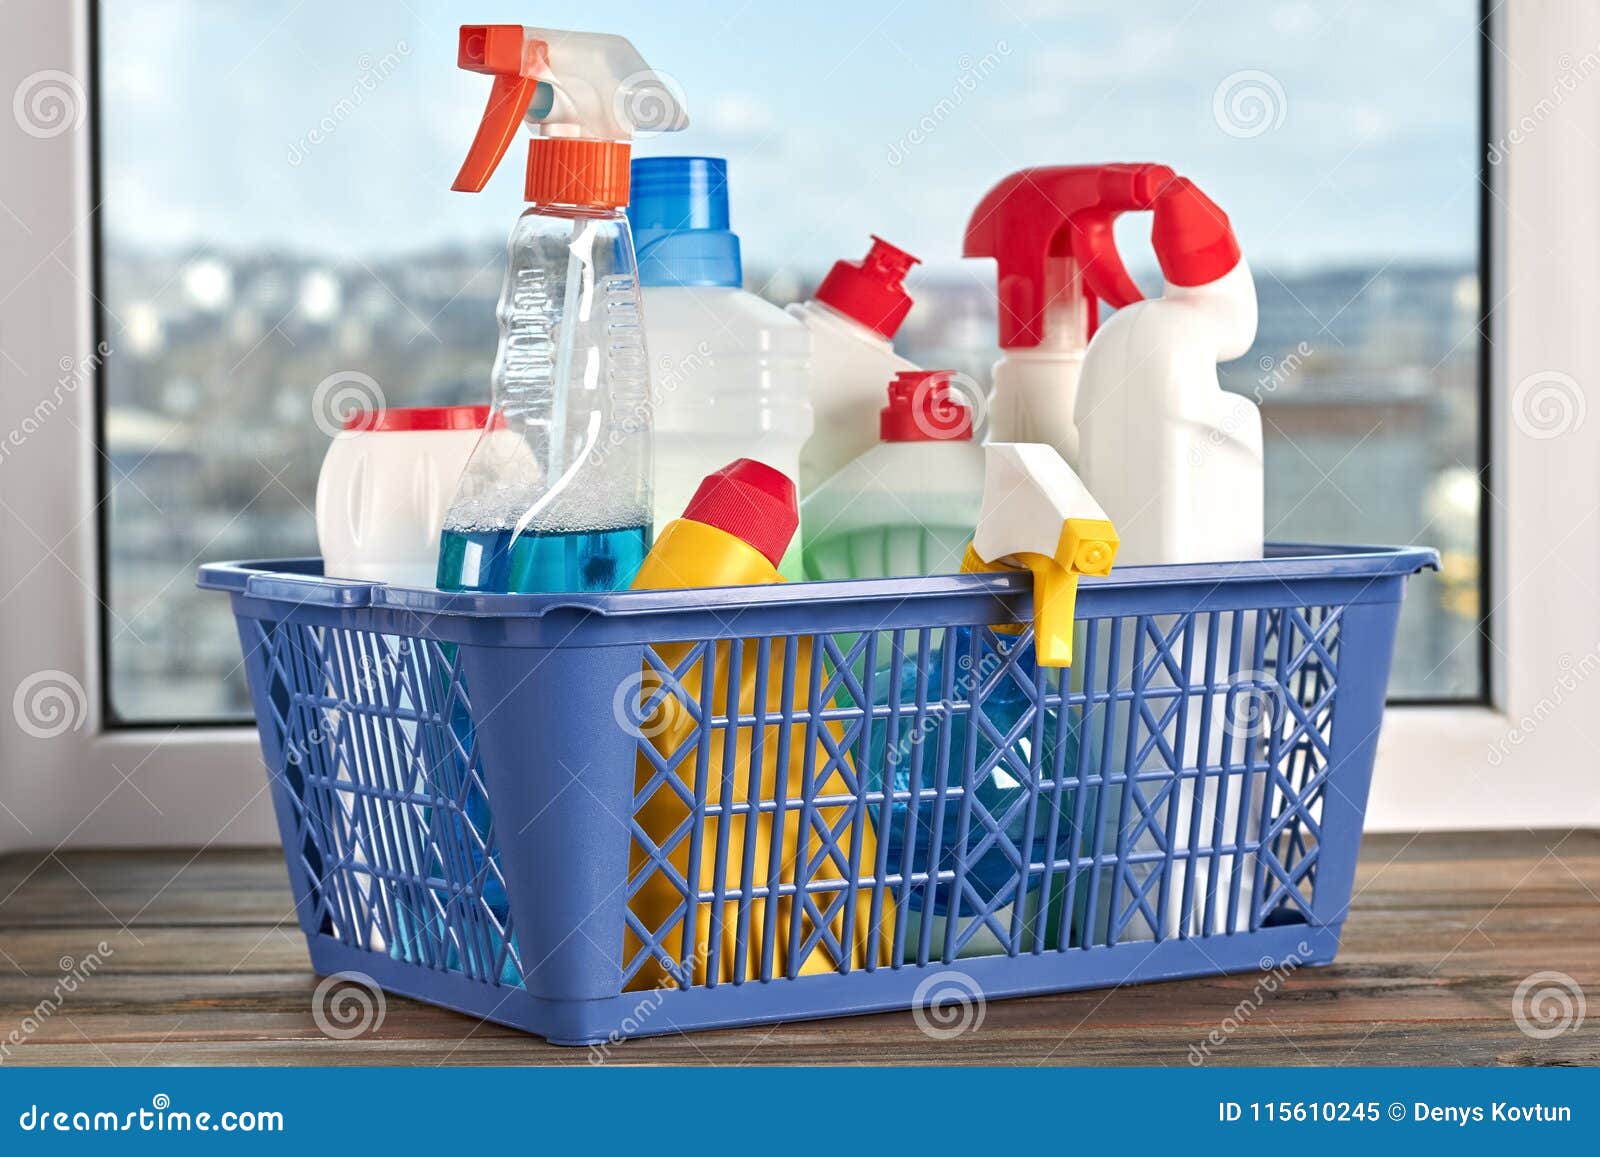 Productos Y Fuentes De Limpieza En Una Cesta Imagen de archivo - Imagen de  detergente, concepto: 115610245